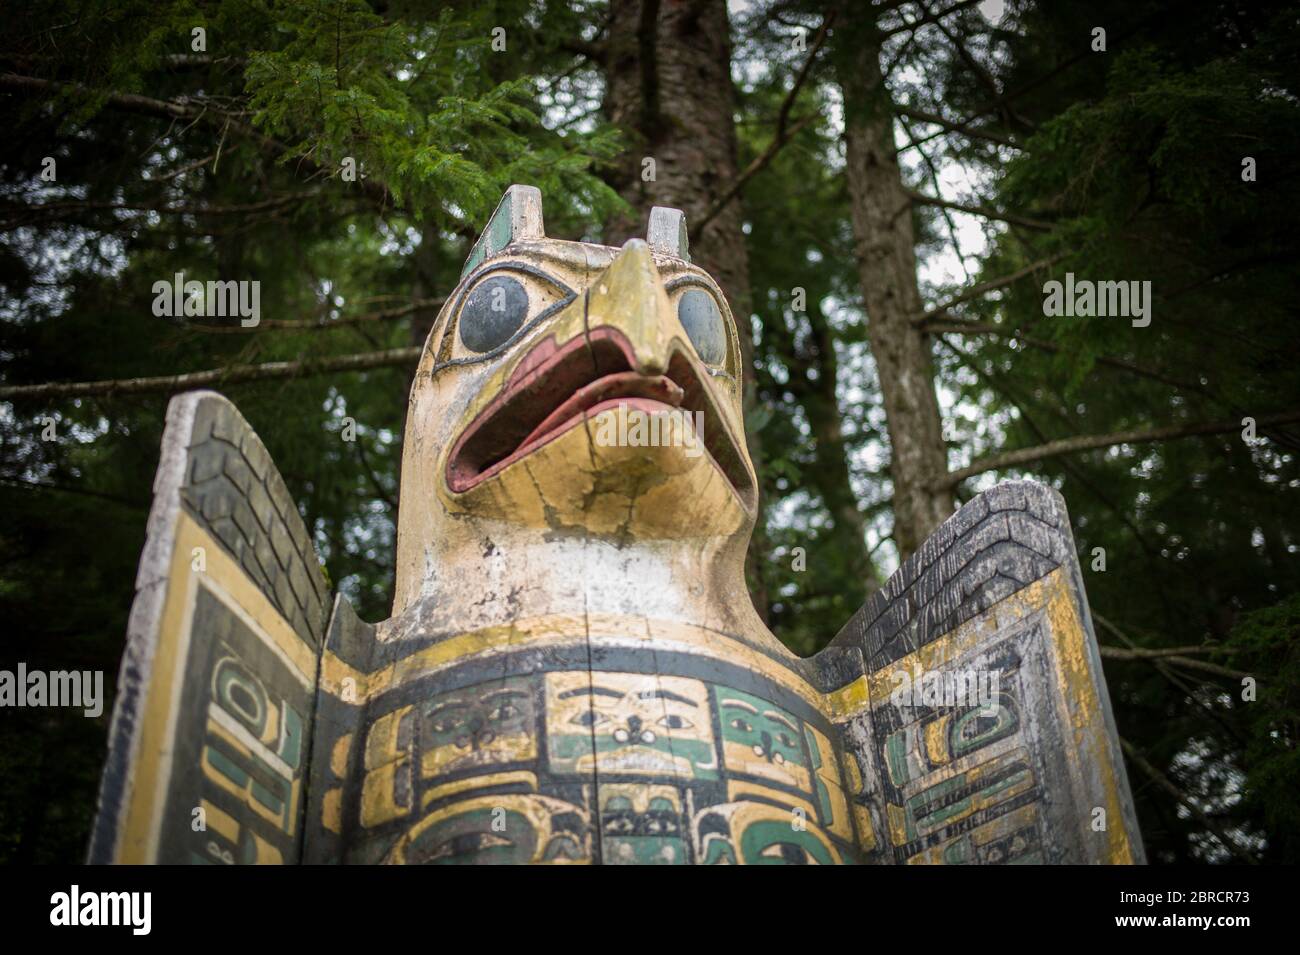 Le parc historique de Totem Bight, Ketchikan, Alaska, États-Unis, présente une réplique et des mâts totem amérindiens restaurés, y compris un marqueur de tombe d'aigle Banque D'Images